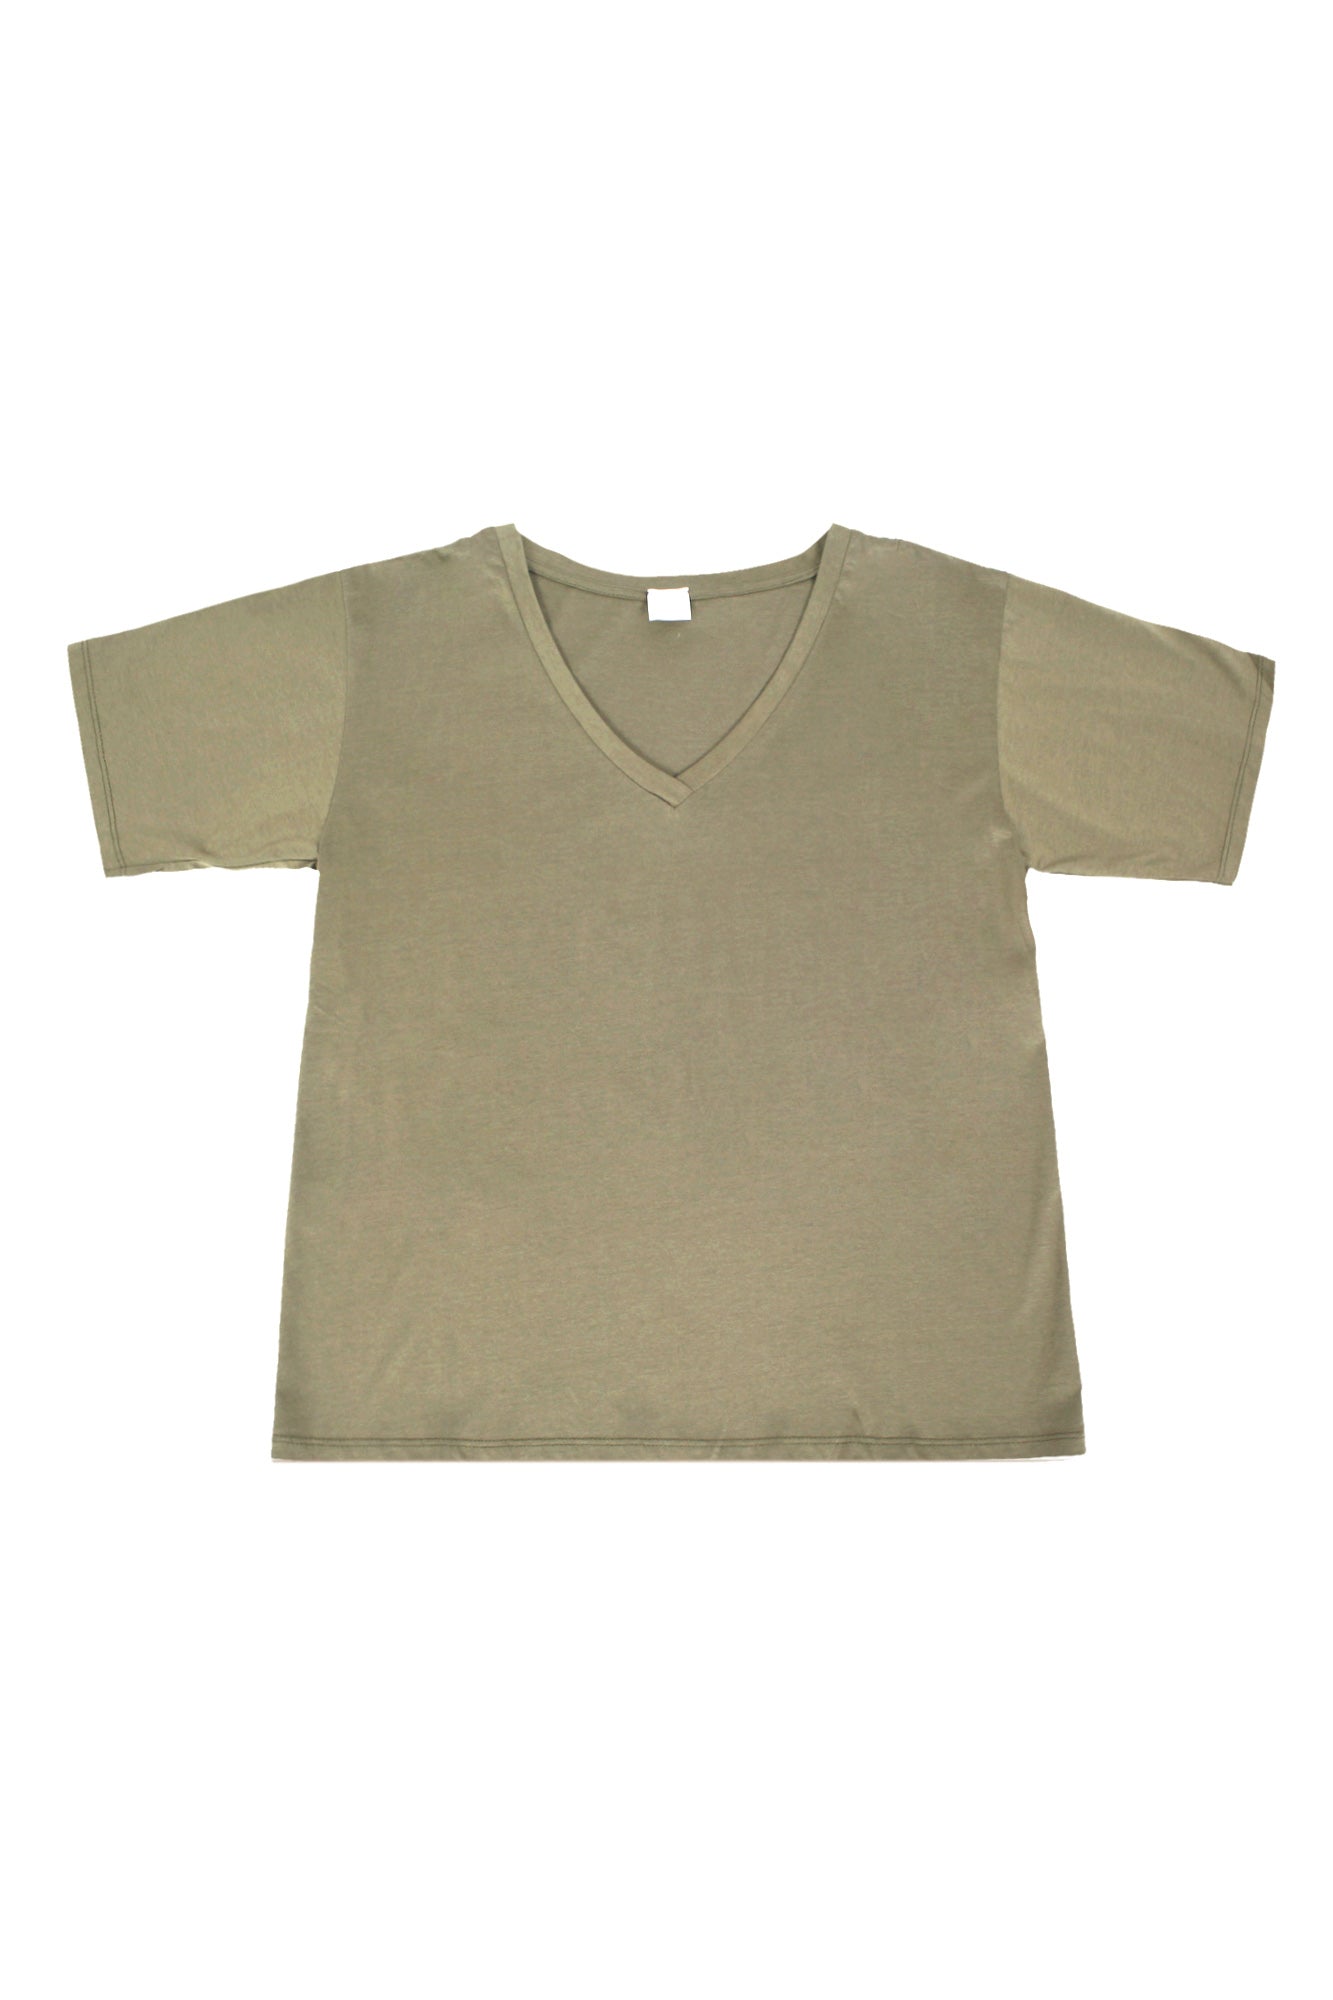 La Femme Blanche - T-shirt - 431581 - Militare